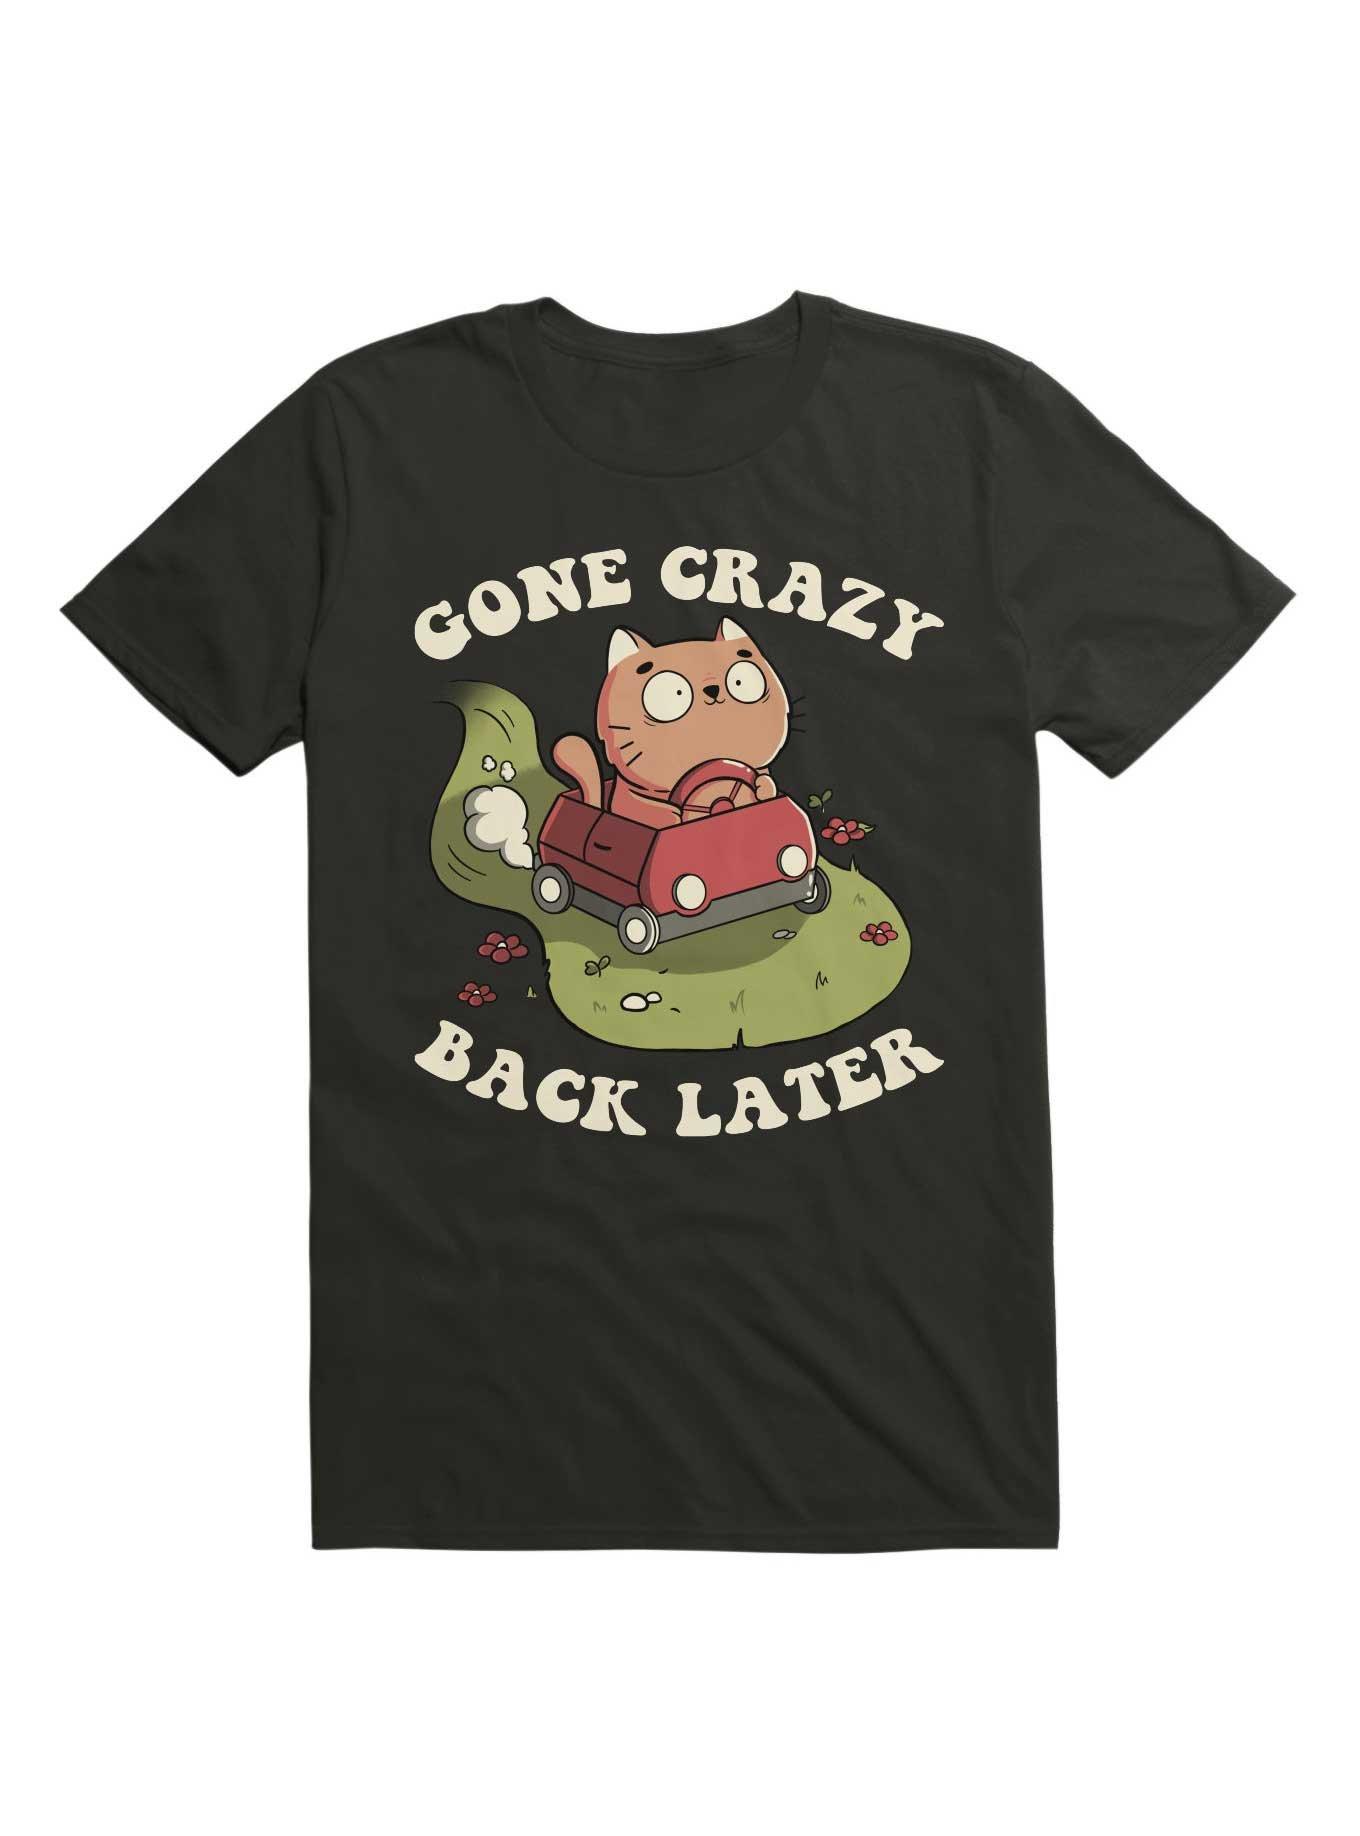 Kitten Gone Crazy Back Later T-Shirt